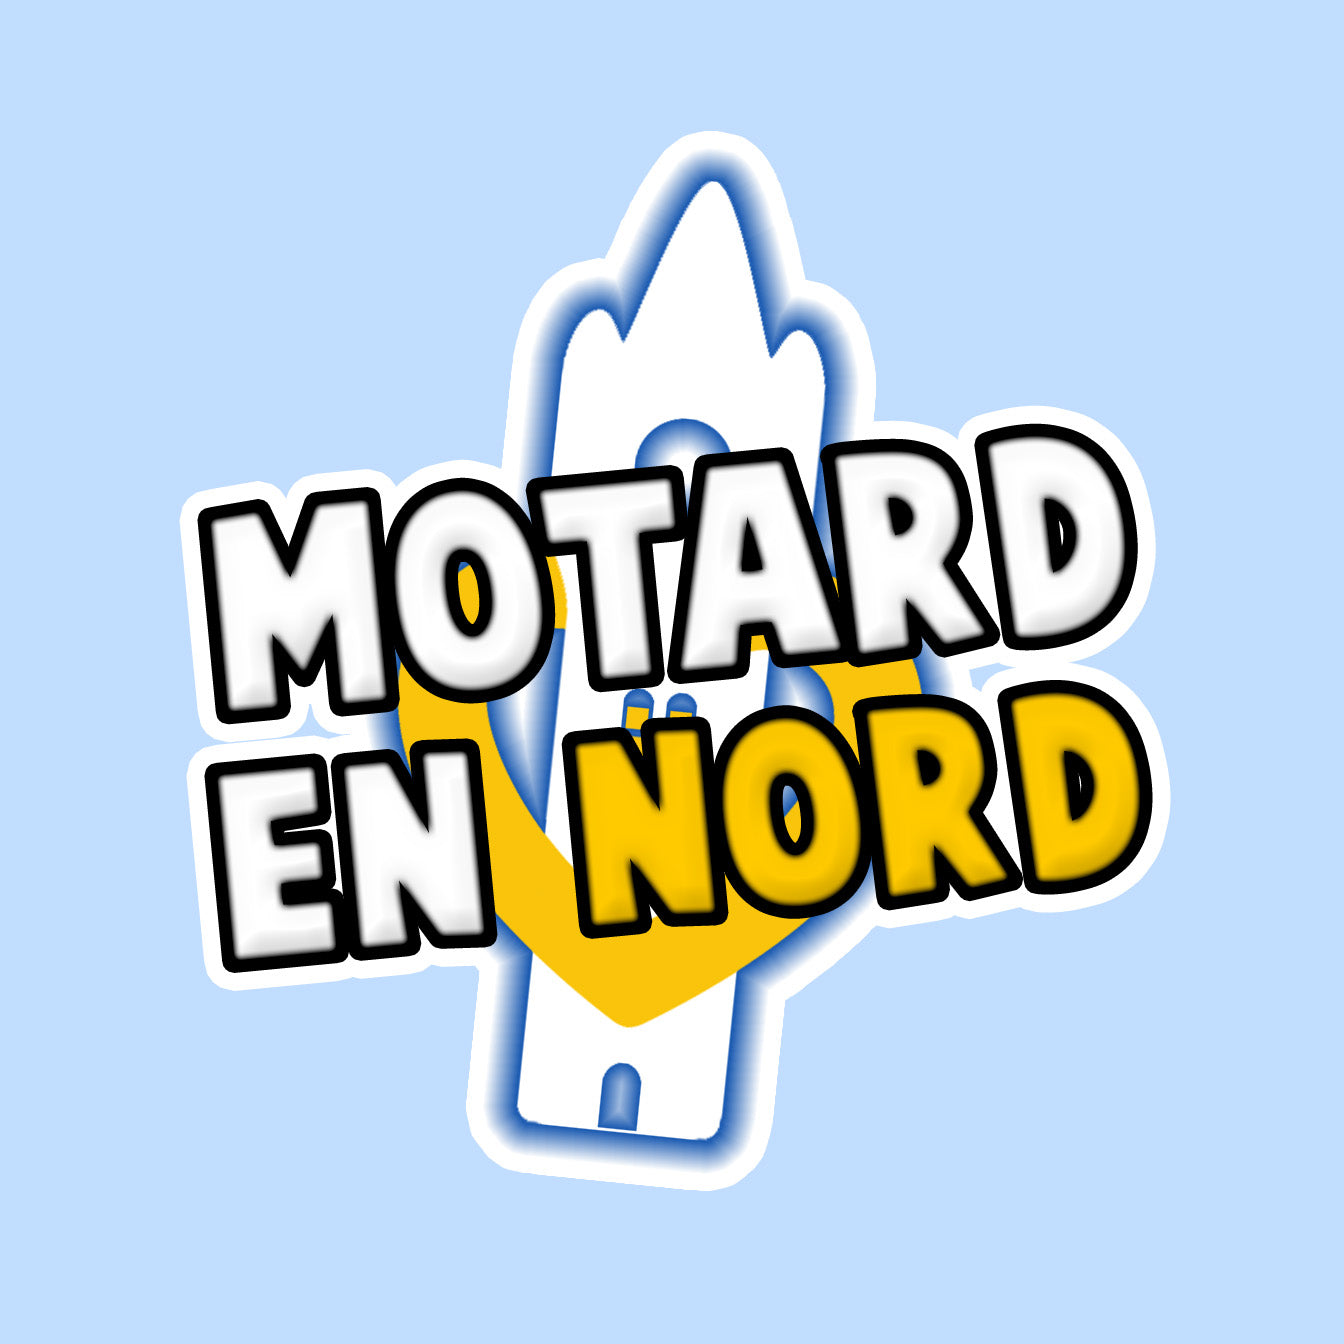 Sticker "Motard en Nord"